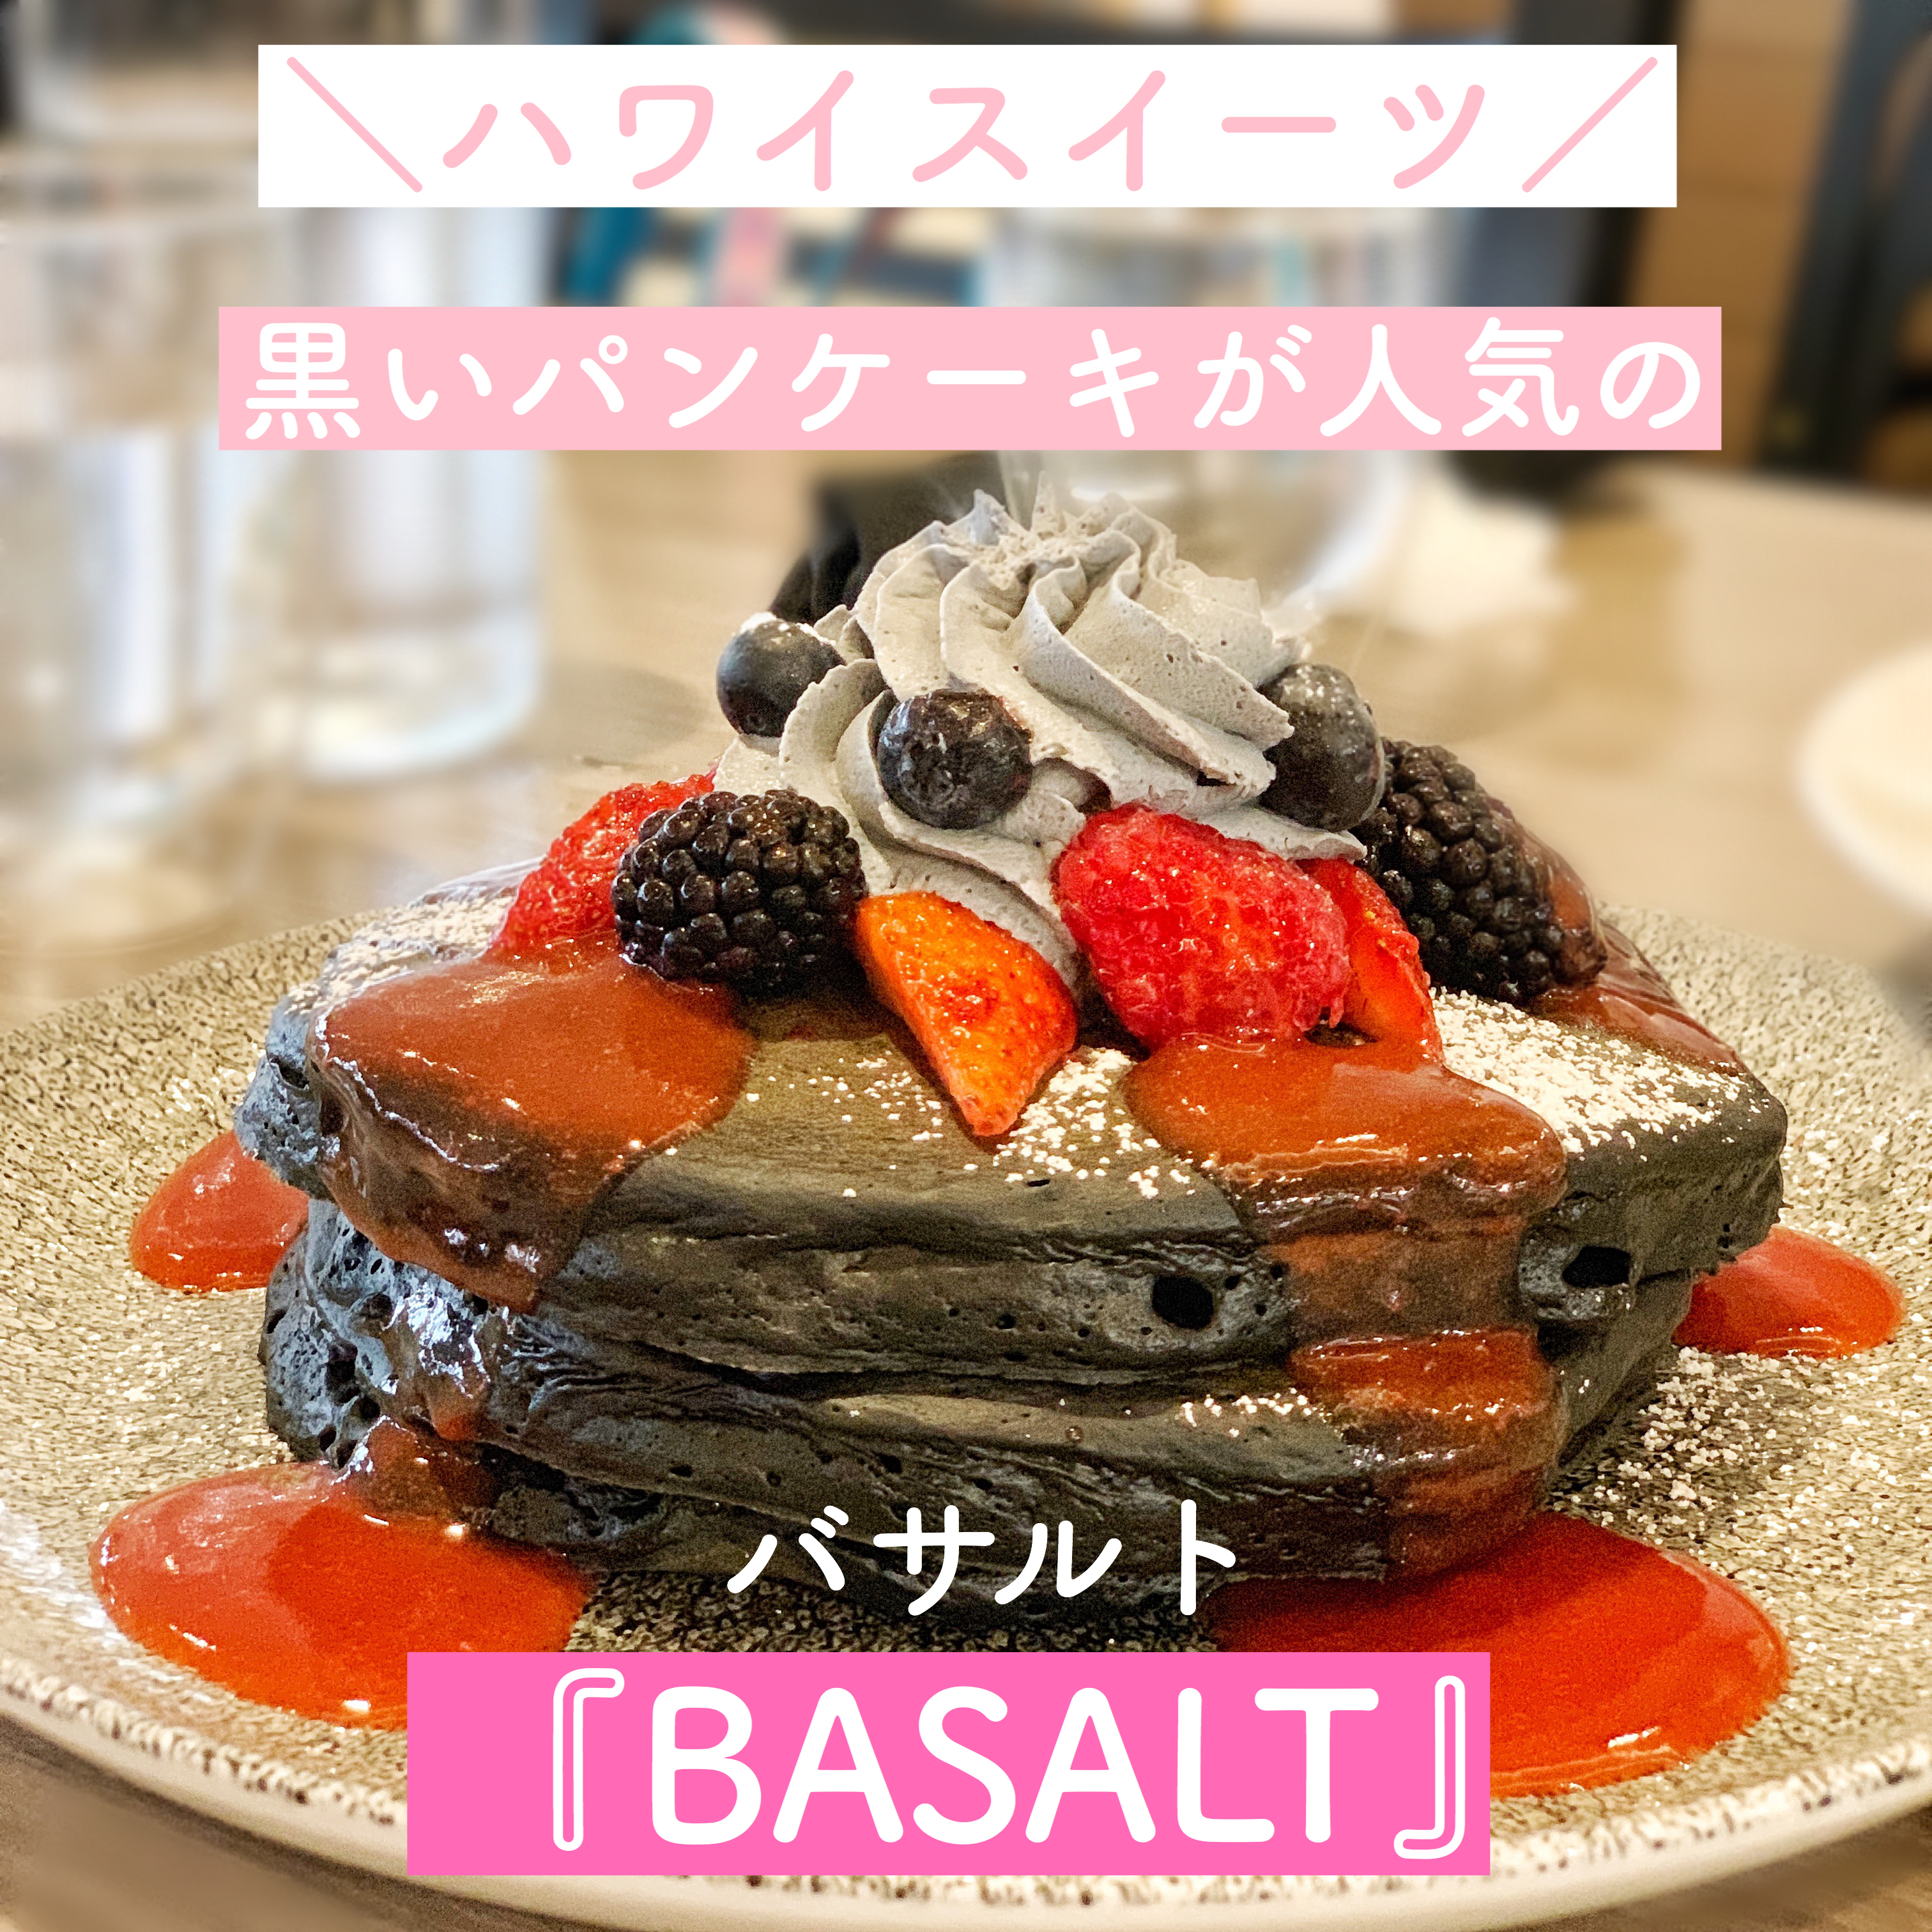 【ハワイスイーツ】「BASALT(バサルト)」の黒いチャコールバターパンケーキ【朝食】